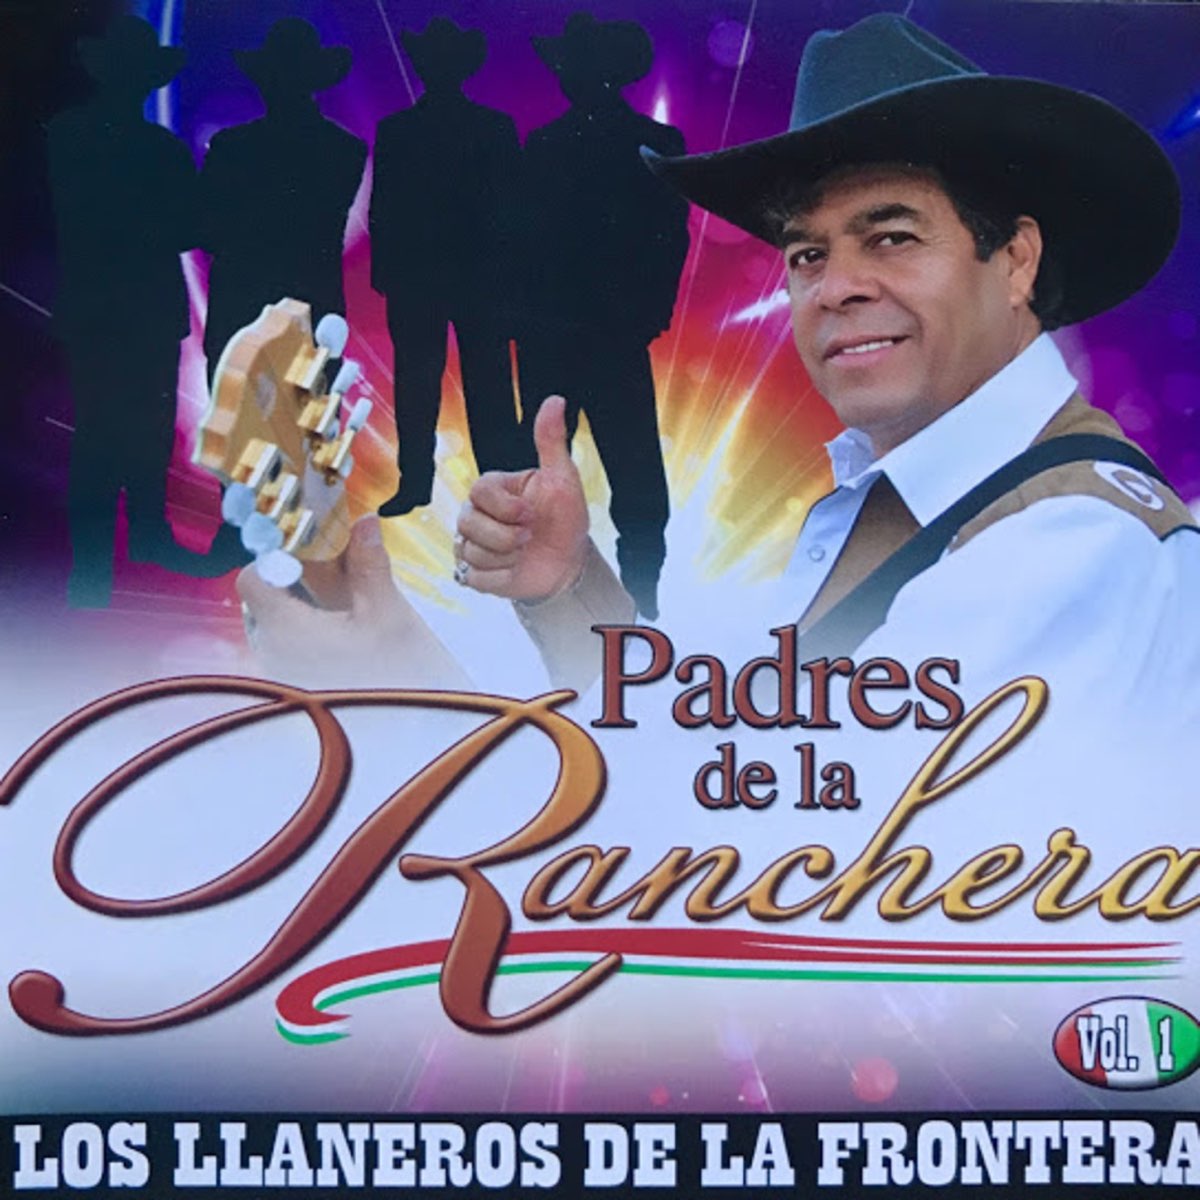 Padres de la Ranchera, Vol. 1 de Los Llaneros De La Frontera en Apple Music